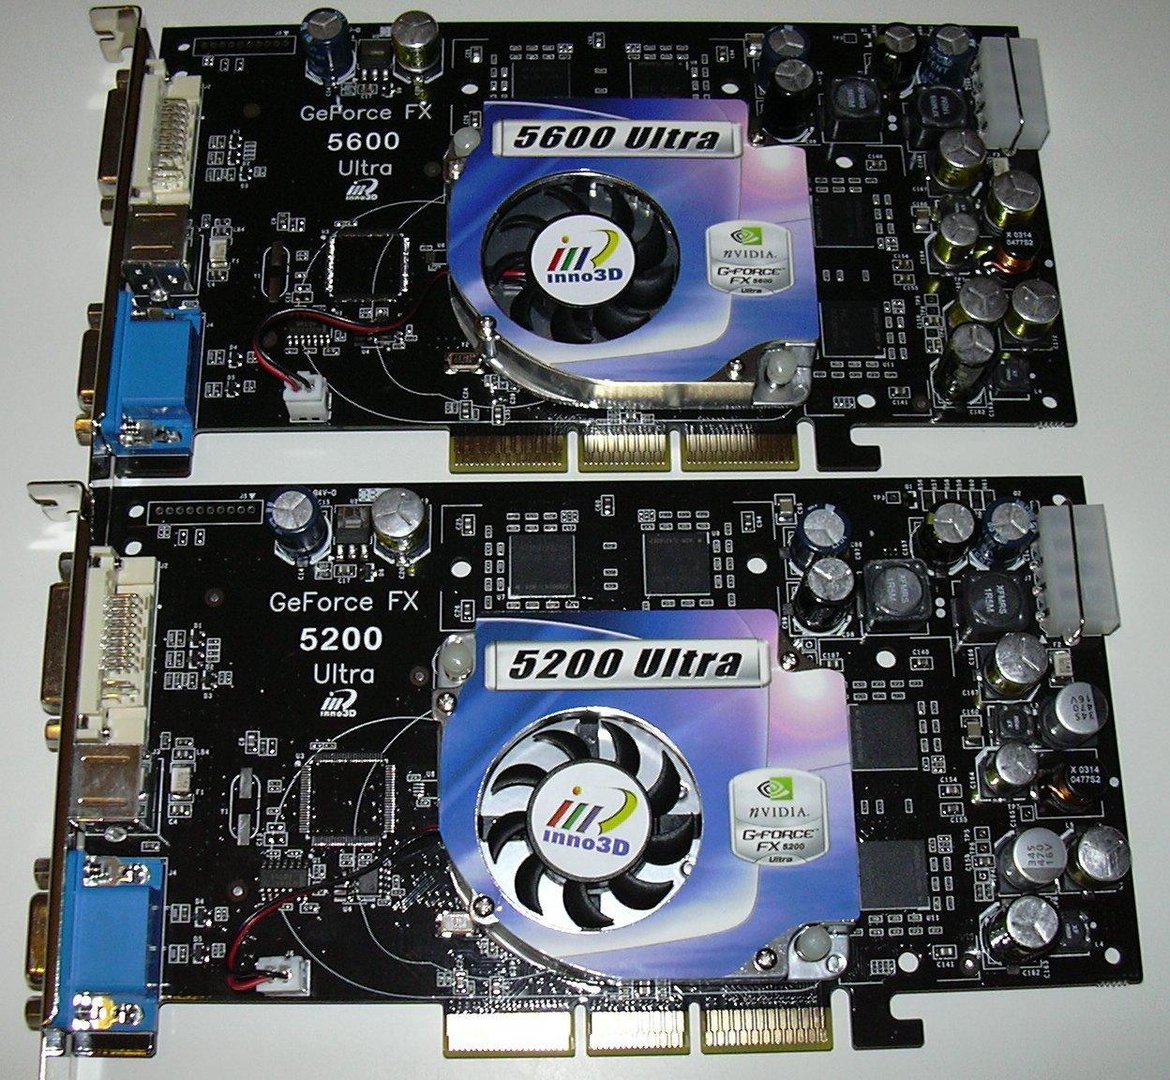 FX5200u vs. FX5600u Frontal